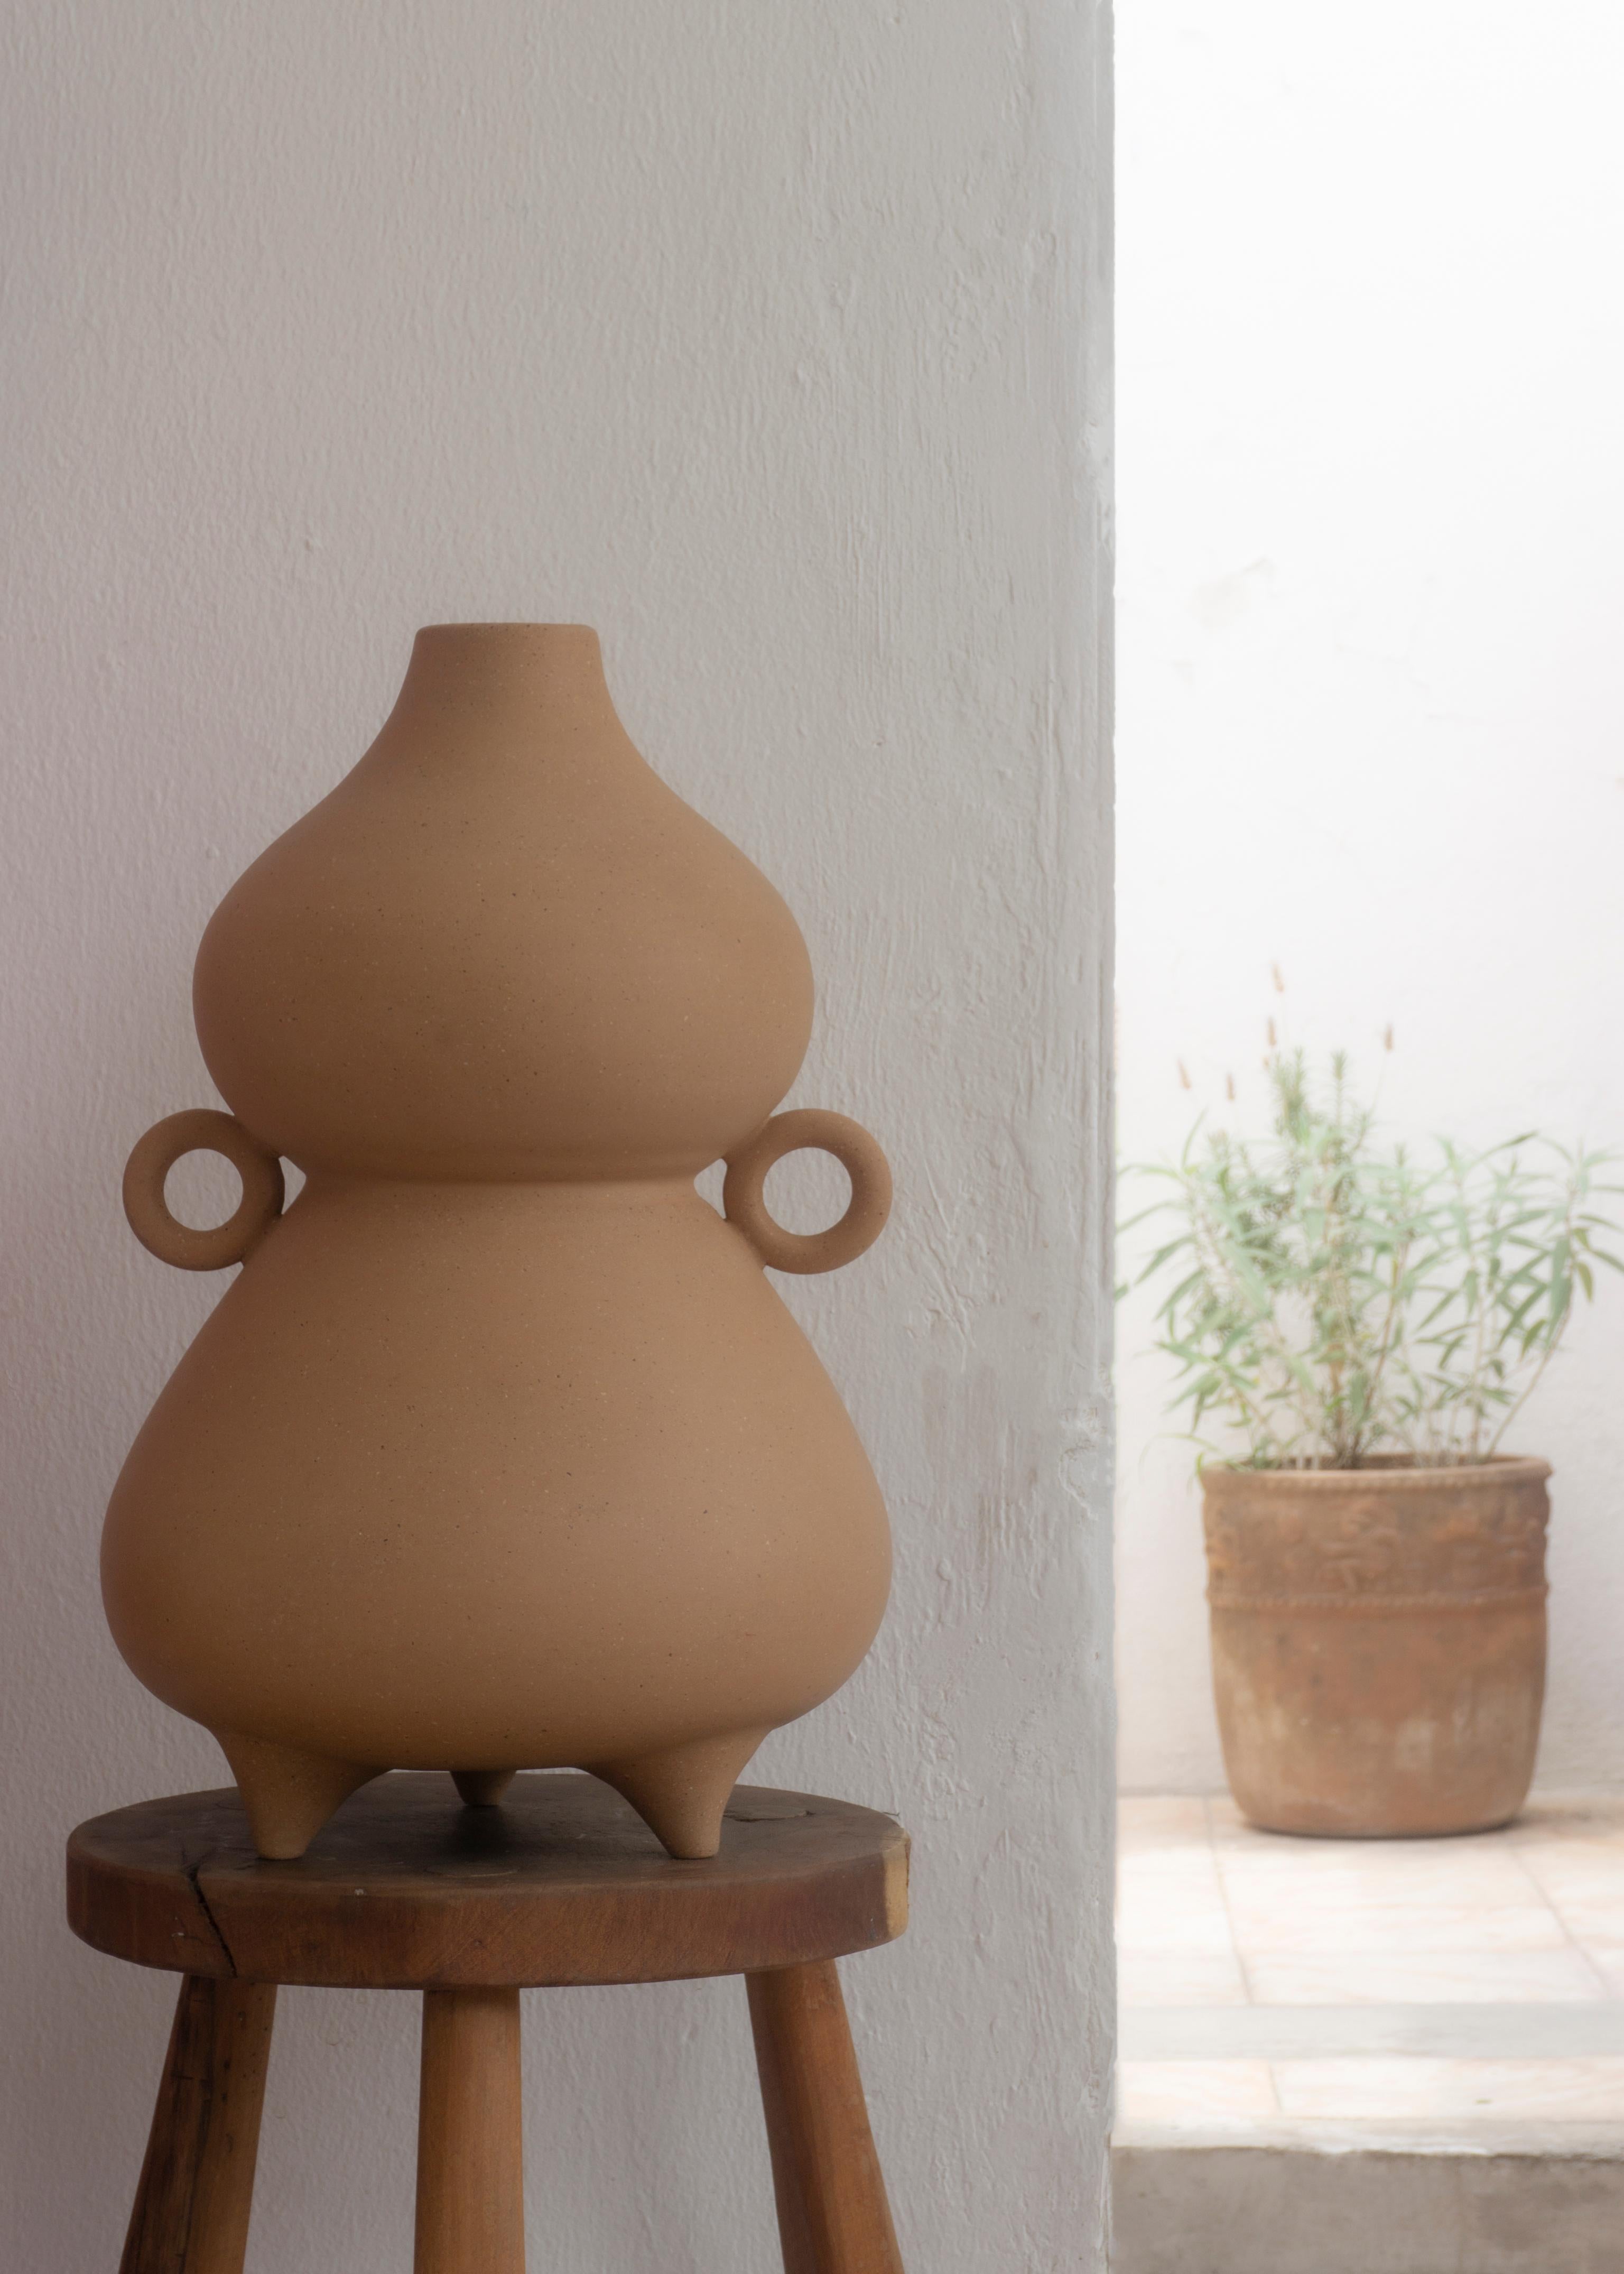 Die dekorative Vase Florinda ist ein handgefertigtes Stück, das auf einer Tretmühle hergestellt wird und eine weiche Oberfläche mit einer glatten Textur aufweist. Es ist eine Hommage an eines der ältesten und traditionellsten Utensilien, das auch